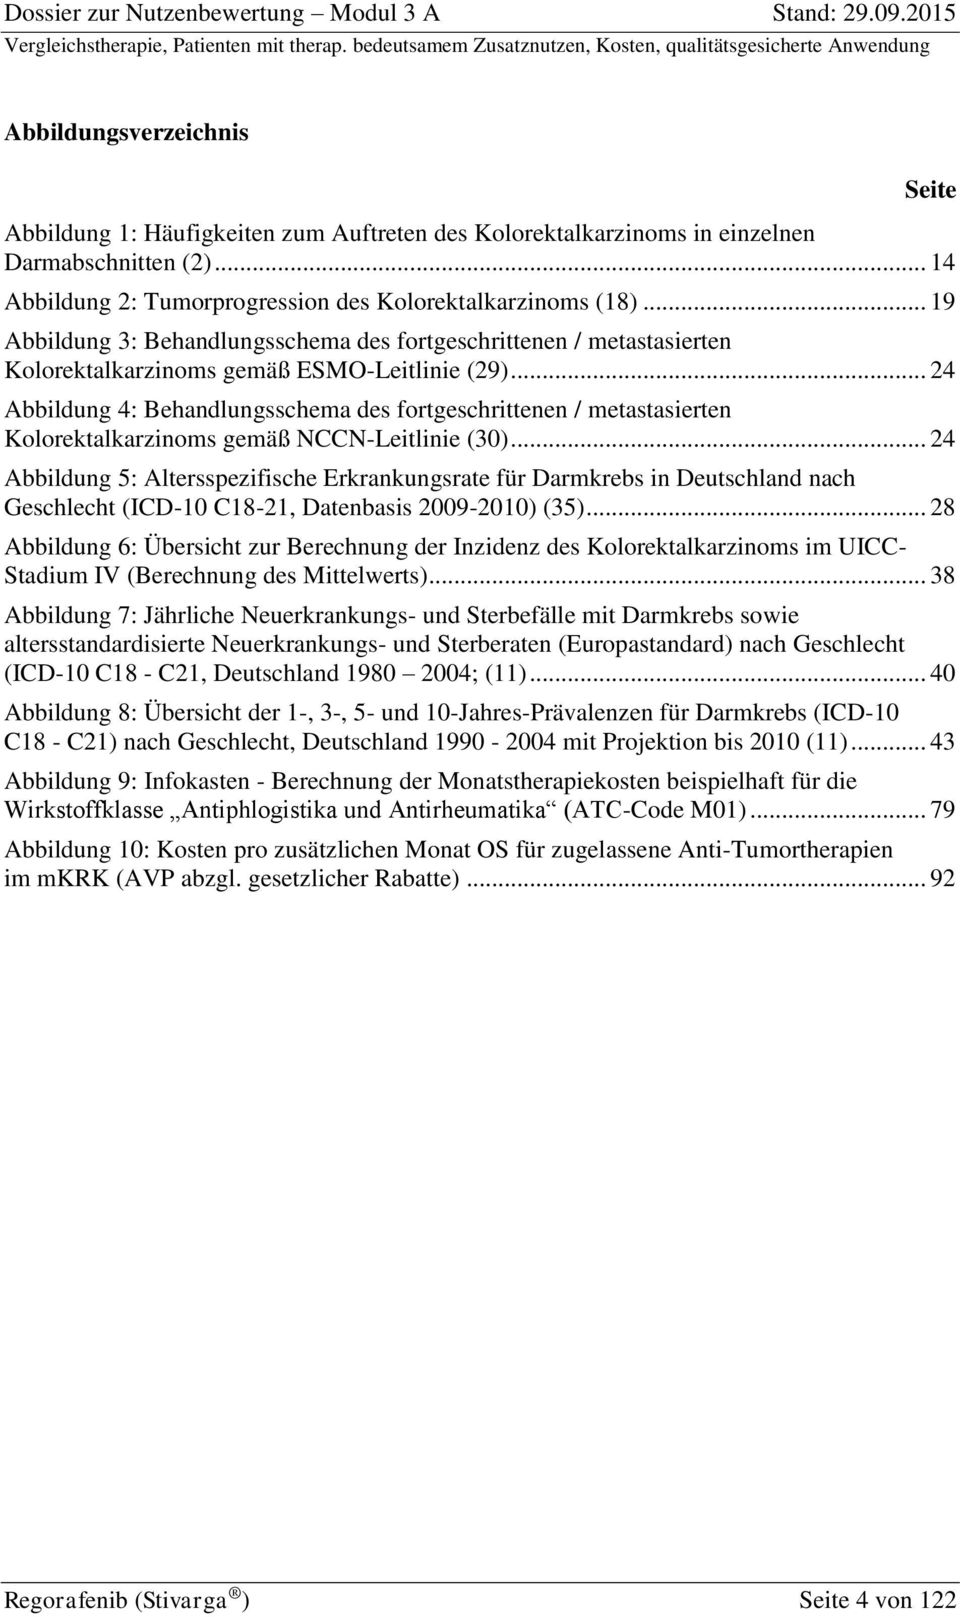 .. 24 Abbildung 4: Behandlungsschema des fortgeschrittenen / metastasierten Kolorektalkarzinoms gemäß NCCN-Leitlinie (30).